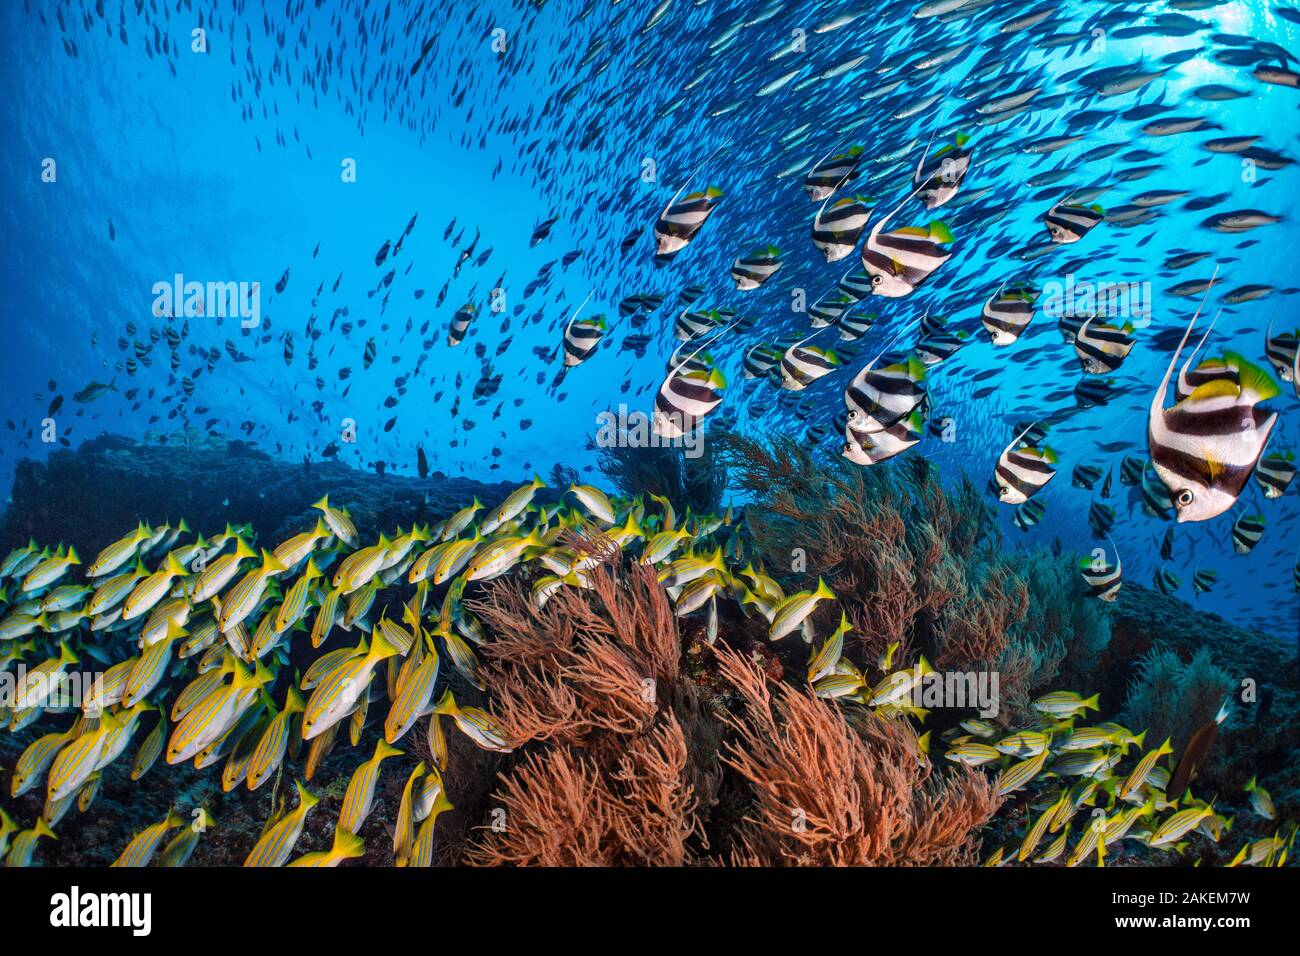 Il Bengala snapper (Lutjanus bengalensis), Bannerfish (Heniochus diphreutes) e Fusiliers (Caesio sp.) immersioni verso la barriera corallina per evitare i predatori. Nord atollo di Ari, Maldive. Oceano Indiano. Foto Stock